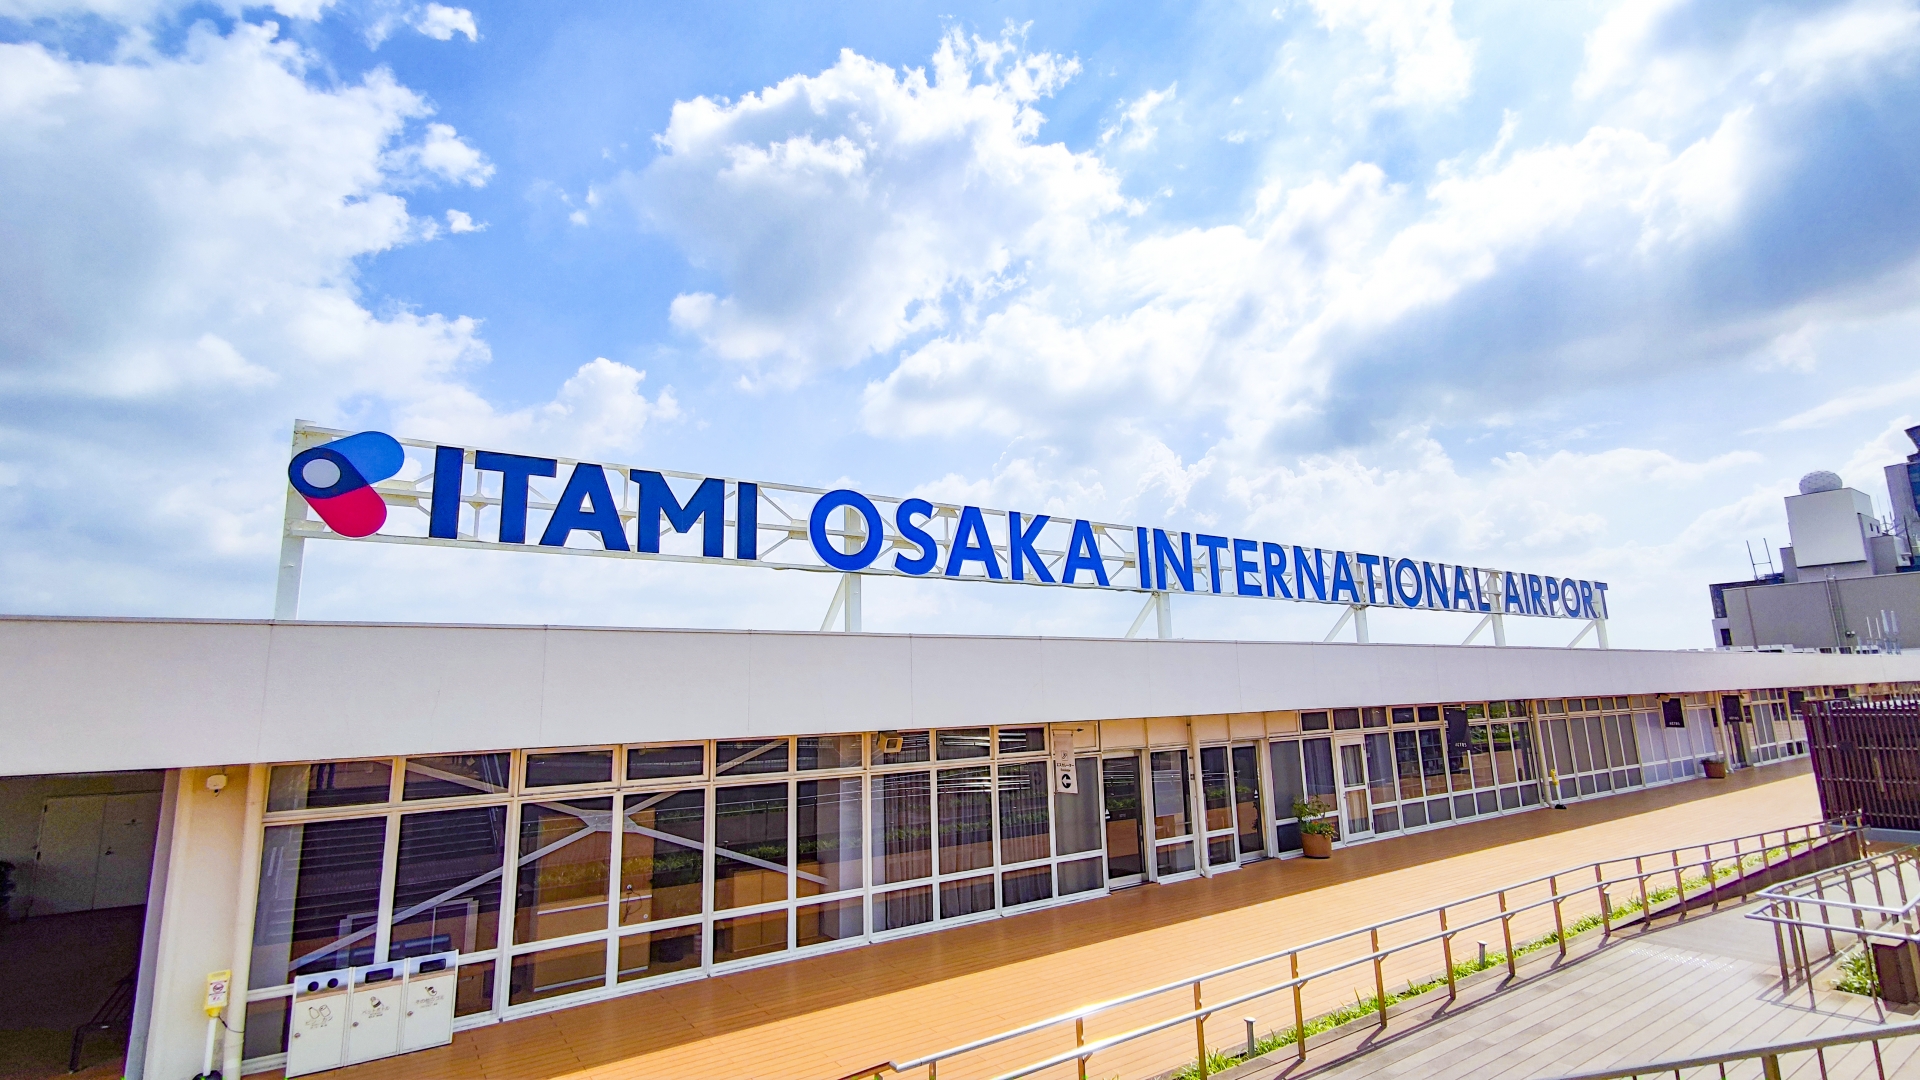 Itami Osaka International Airport